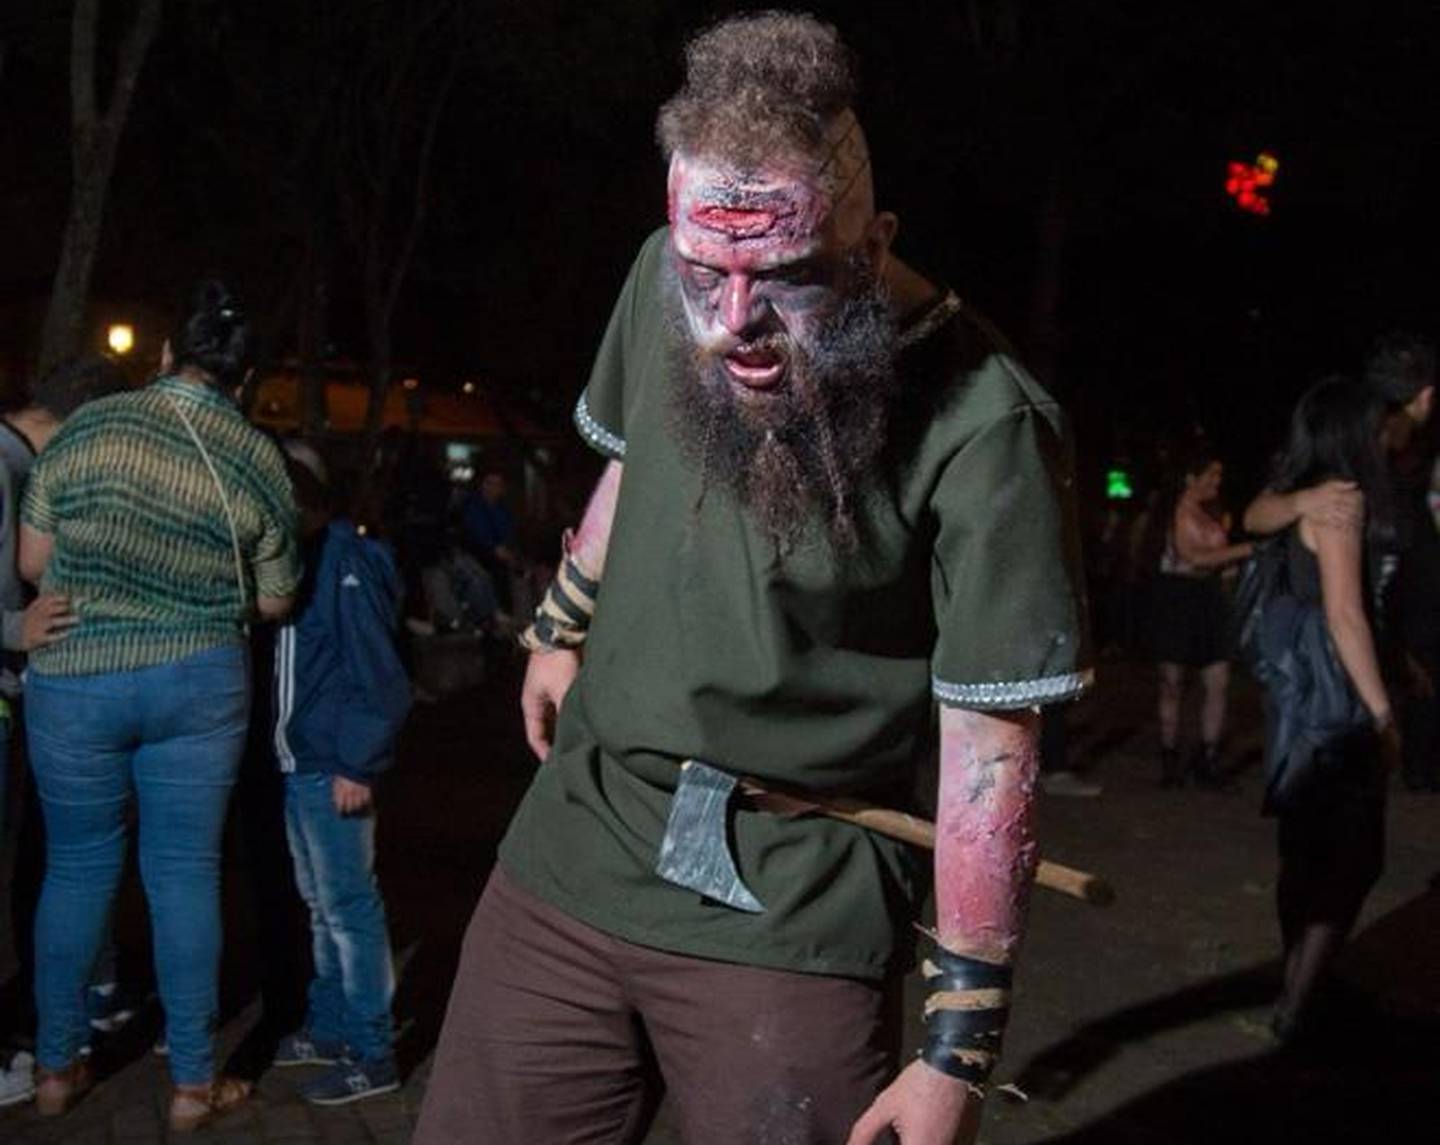 El Zombie Fest comenzó en el 2008 en Costa Rica y desde entonces se ha realizado anualmente. En el 2023, llega a su quinceava edición.